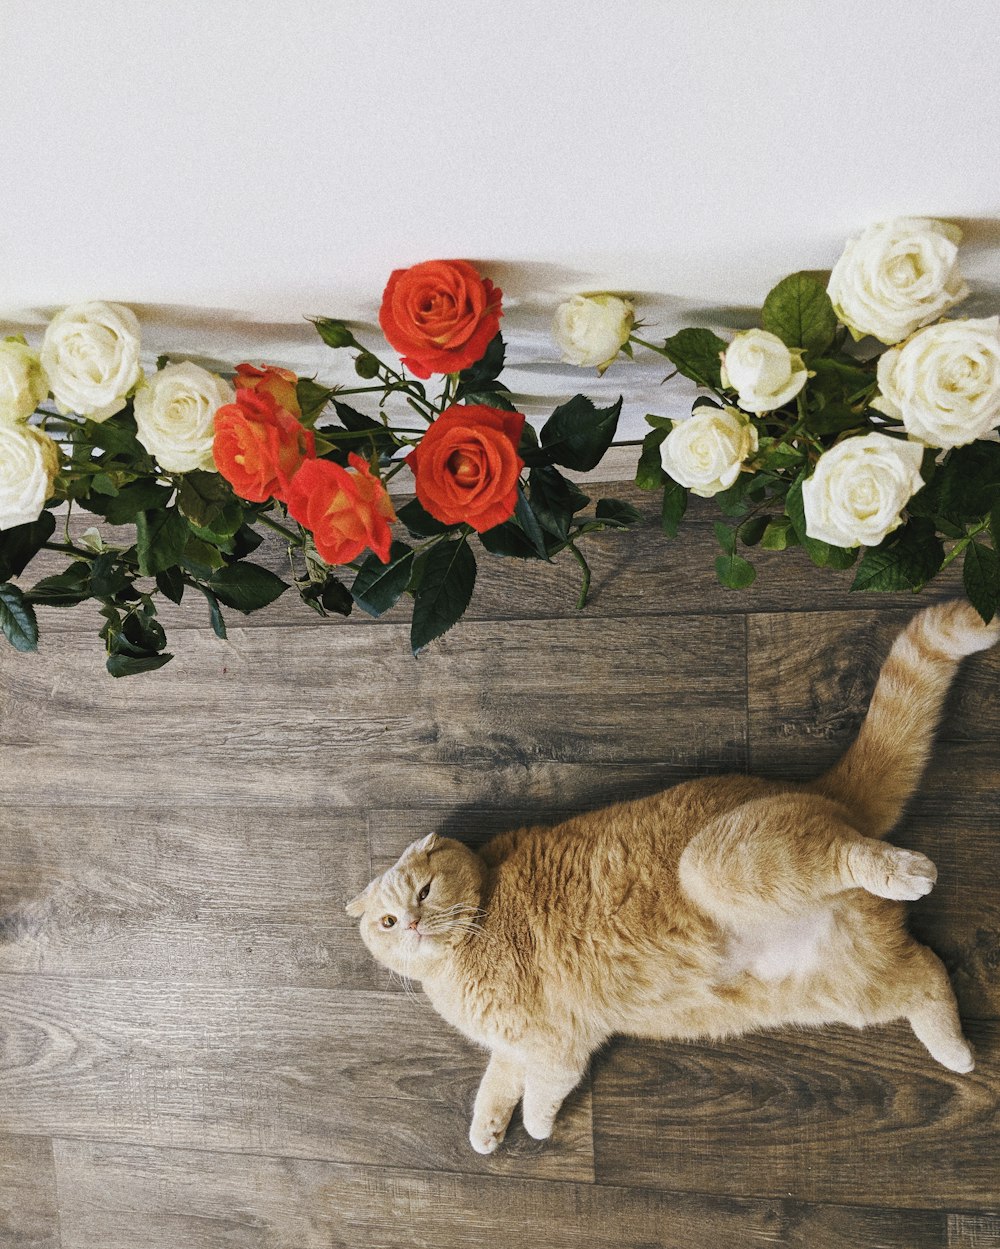 orange tabby cat lying on floor near red and white roses flowers